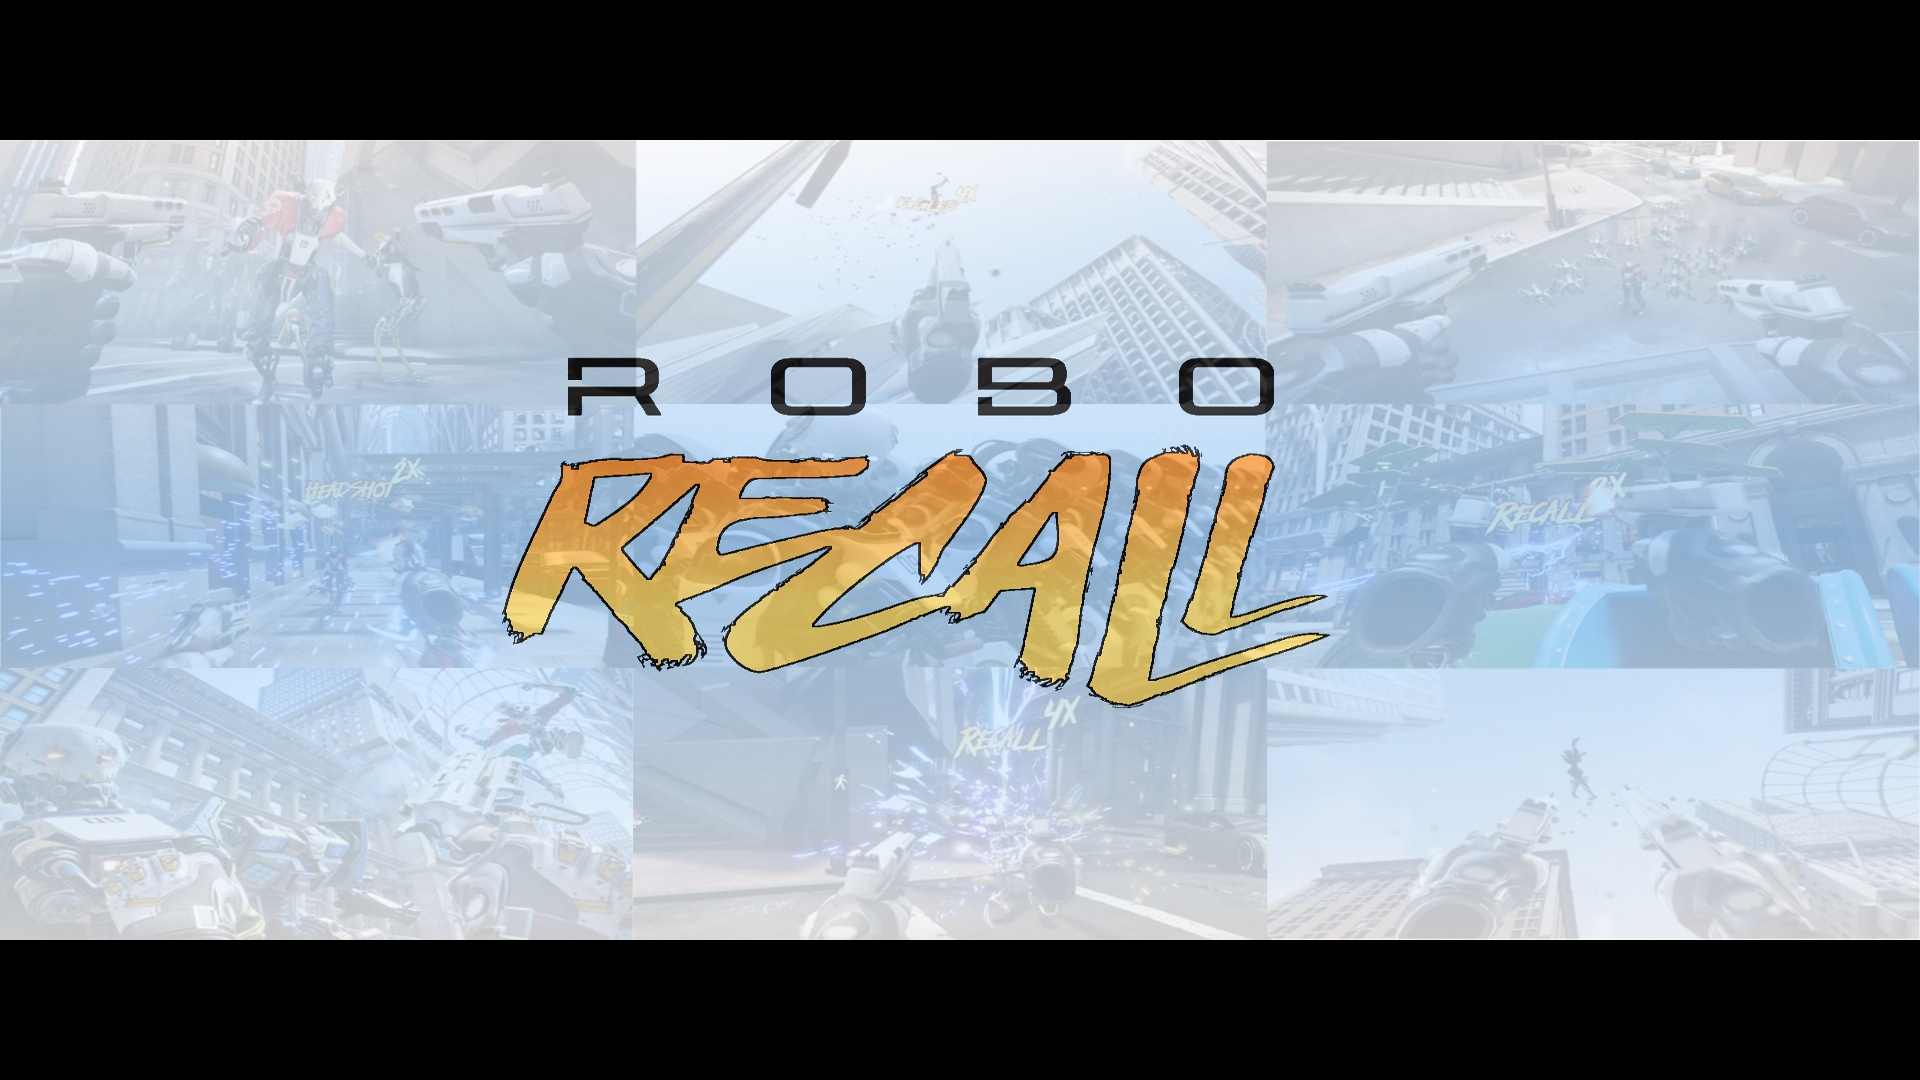 1080p version of Robo Recall Wallpaper :)